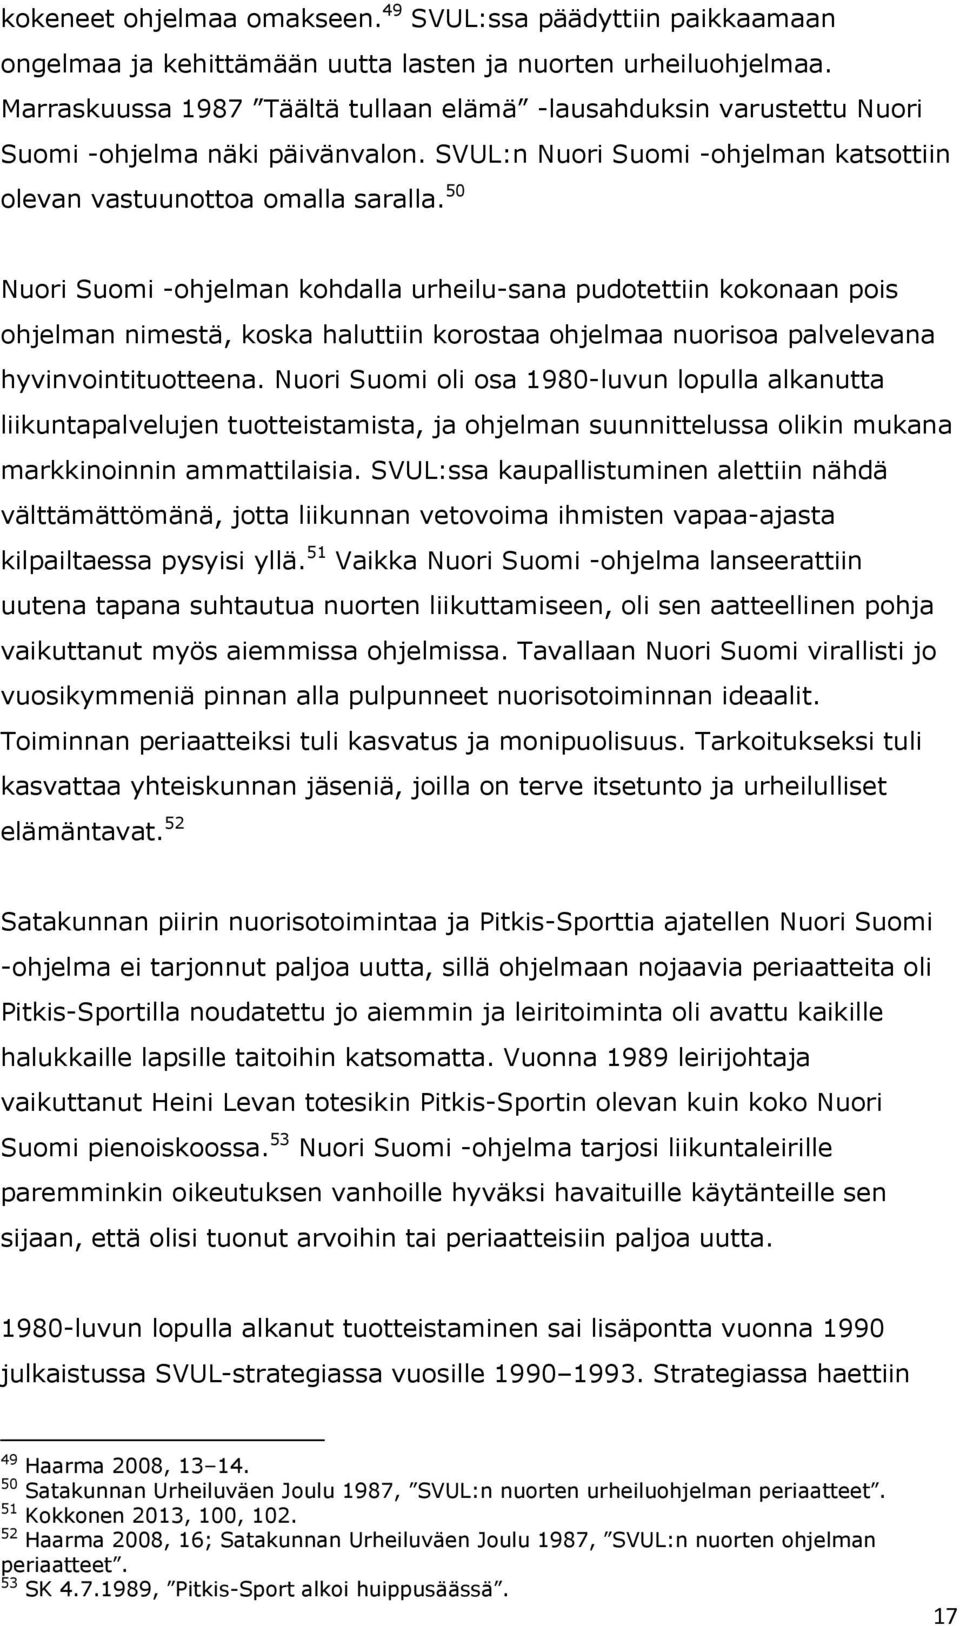 50 Nuori Suomi -ohjelman kohdalla urheilu-sana pudotettiin kokonaan pois ohjelman nimestä, koska haluttiin korostaa ohjelmaa nuorisoa palvelevana hyvinvointituotteena.